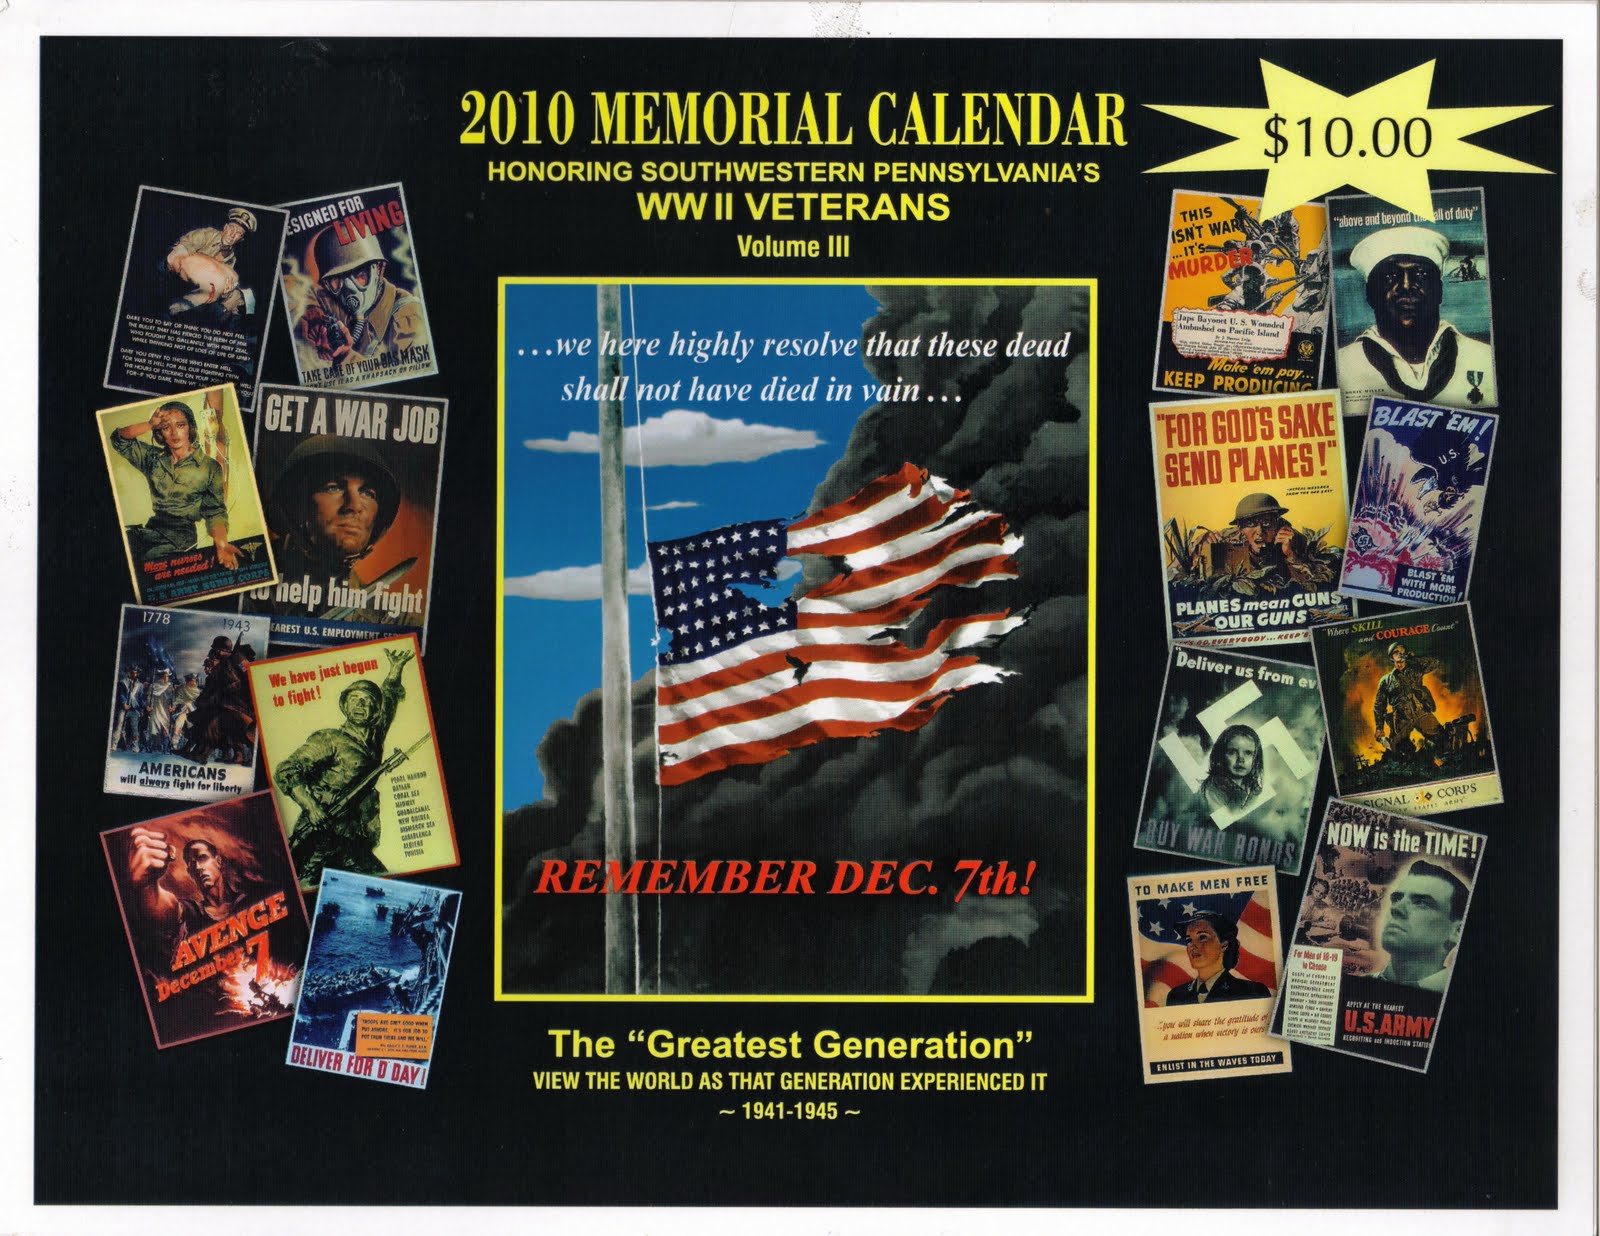 Enjoy Bellevue Today: The 2010 WWII Memorial Calendar